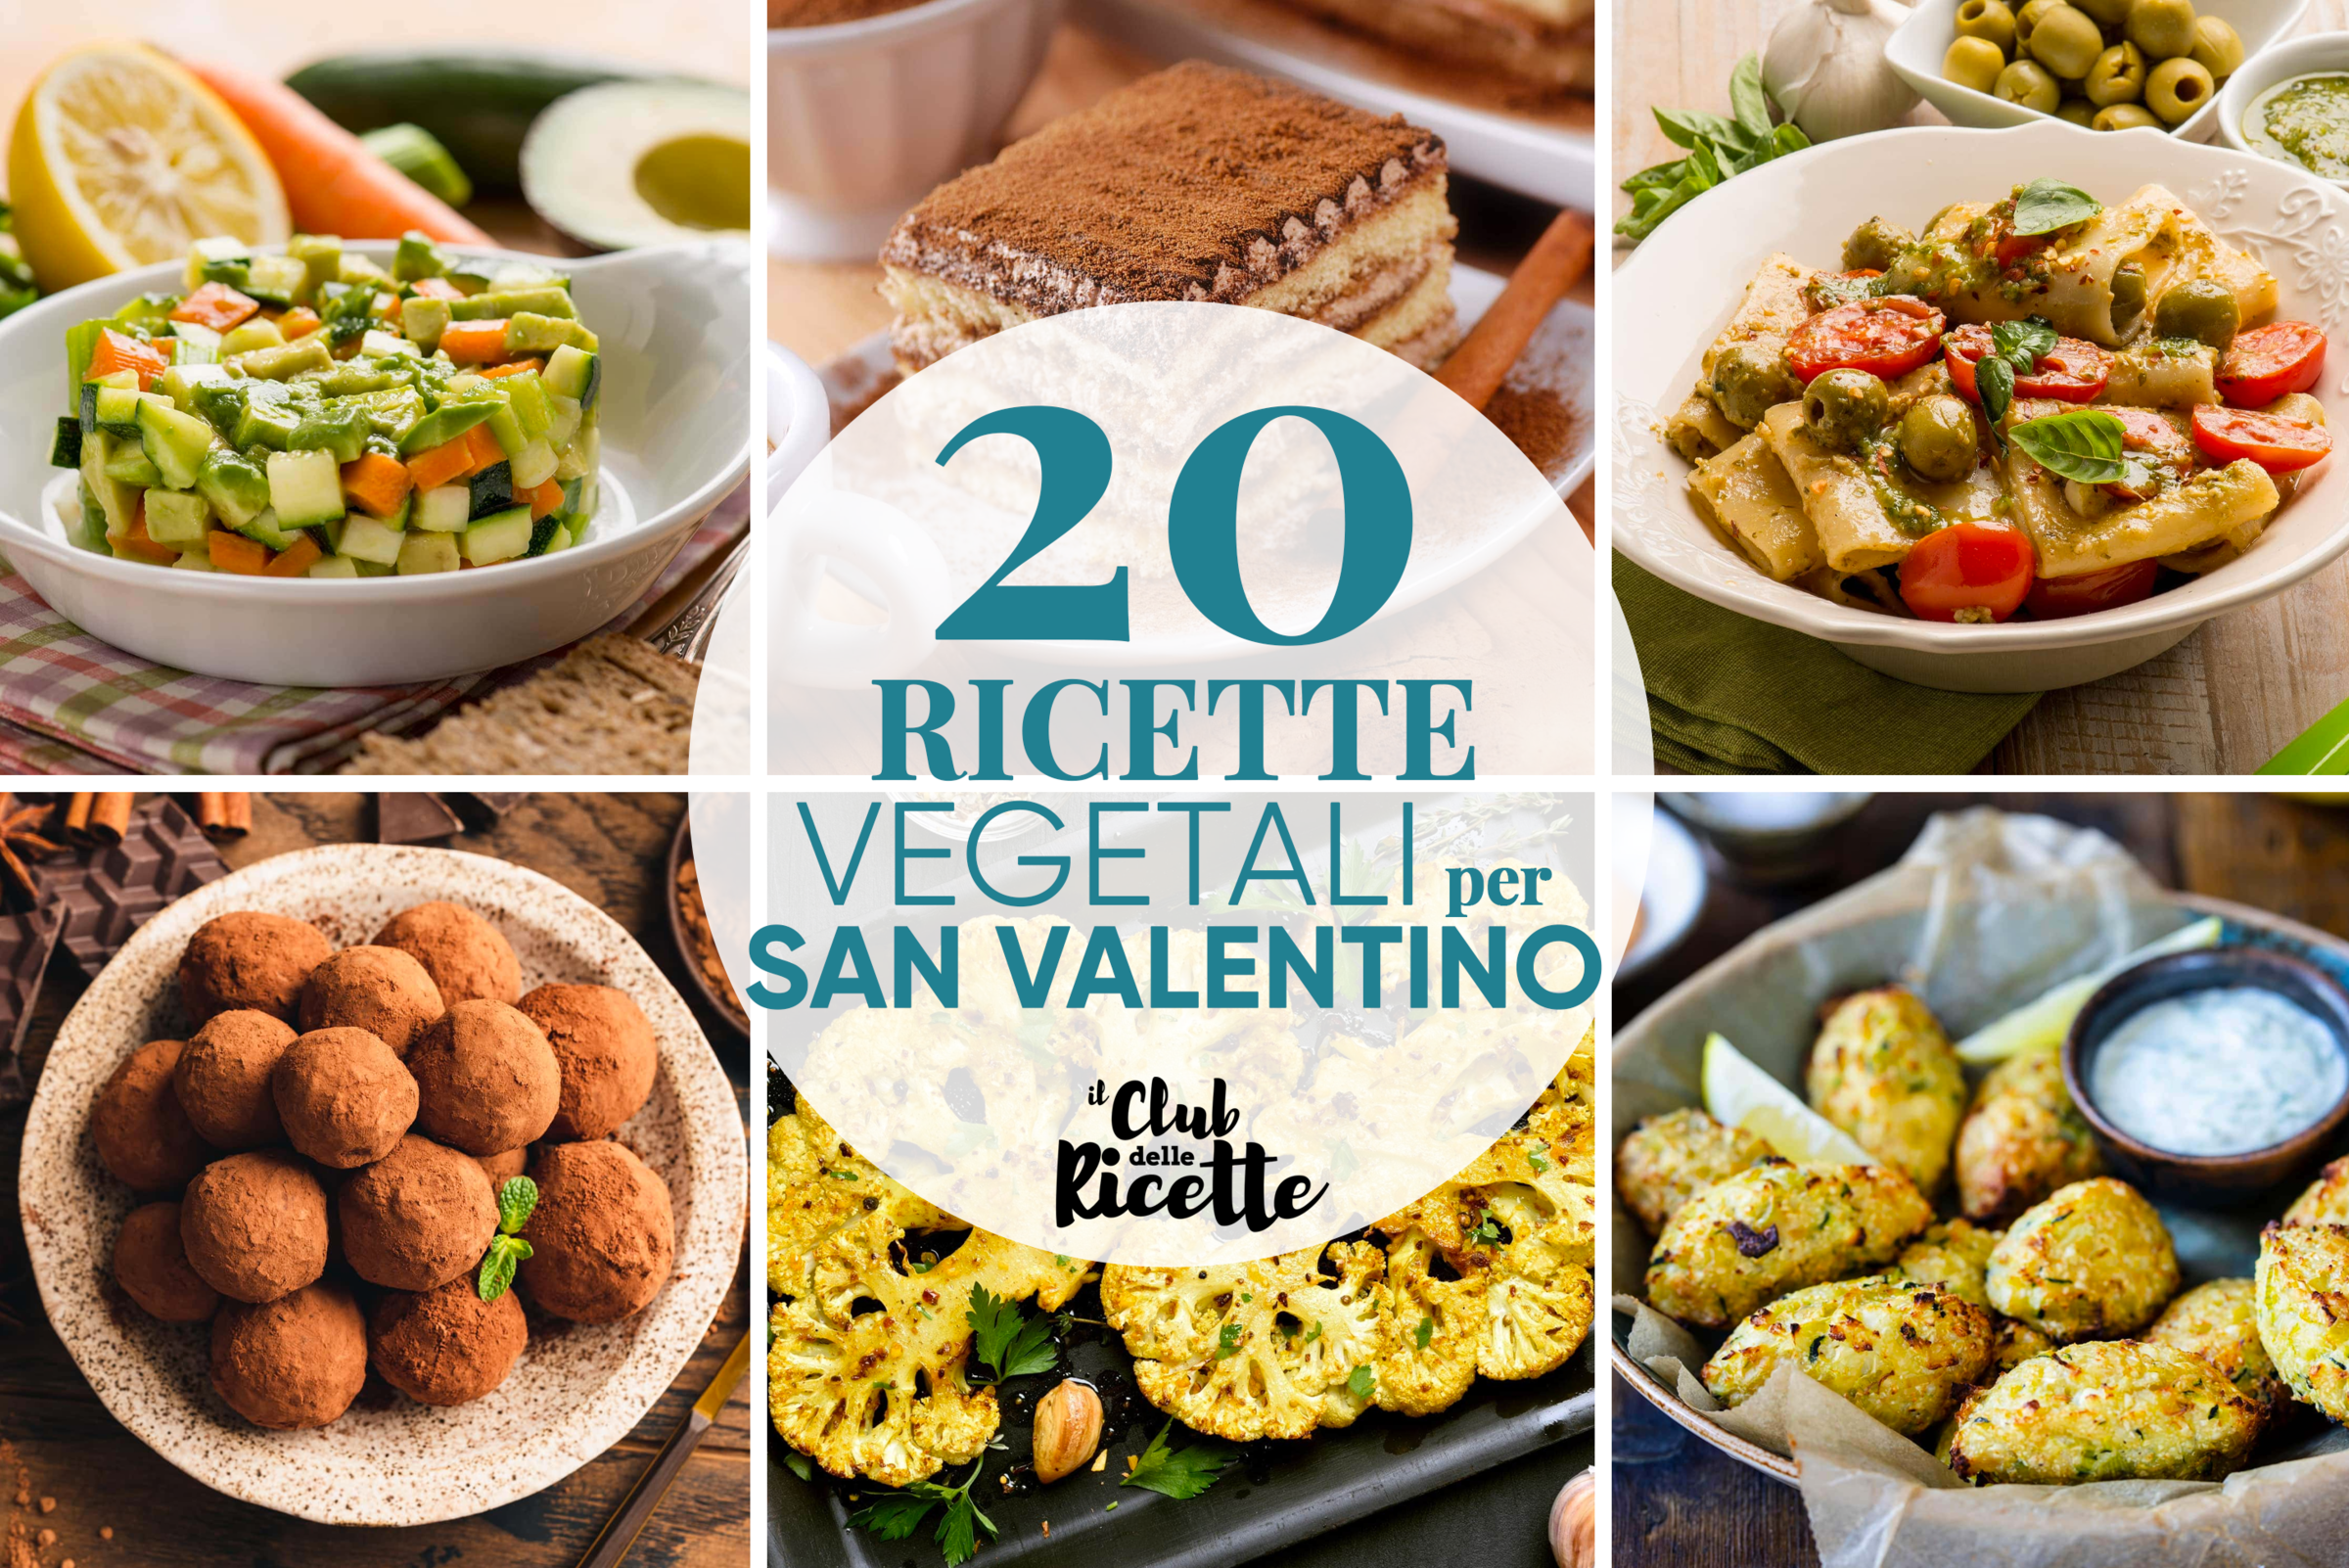 20 Imperdibili Ricette per un San Valentino Vegetariano